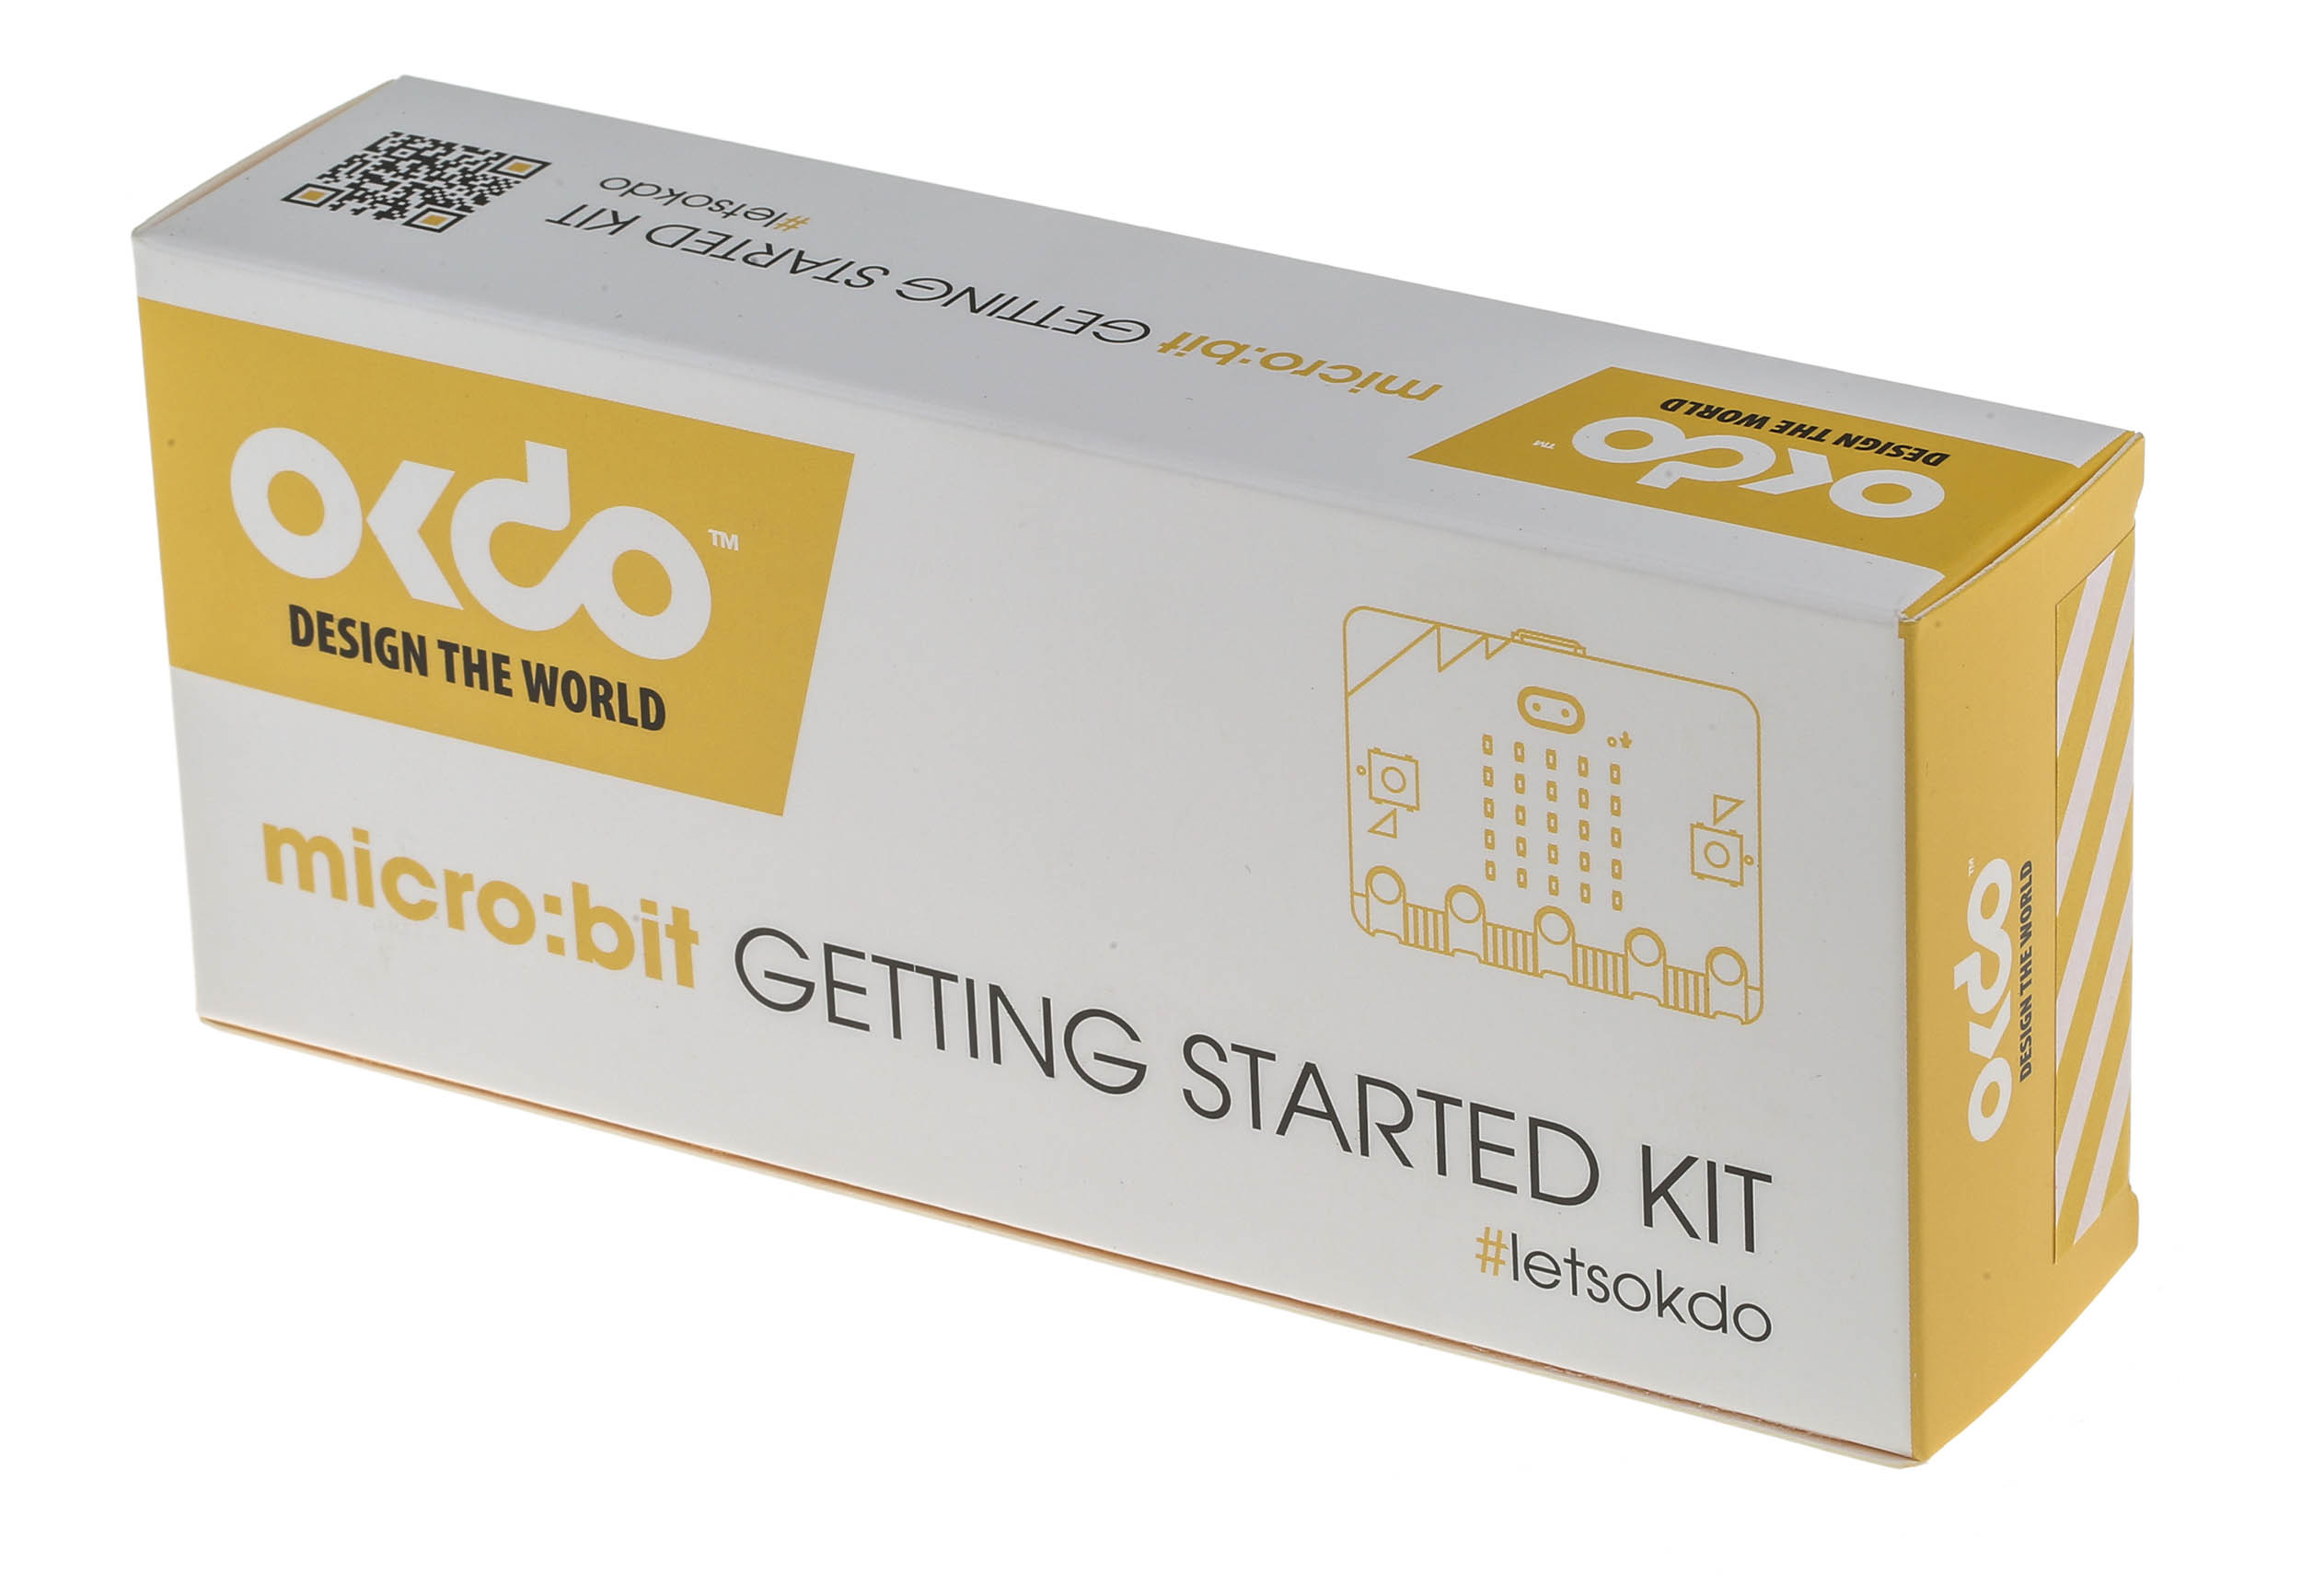 BBC micro:bit V2 GO - Starter Kit - OKdo